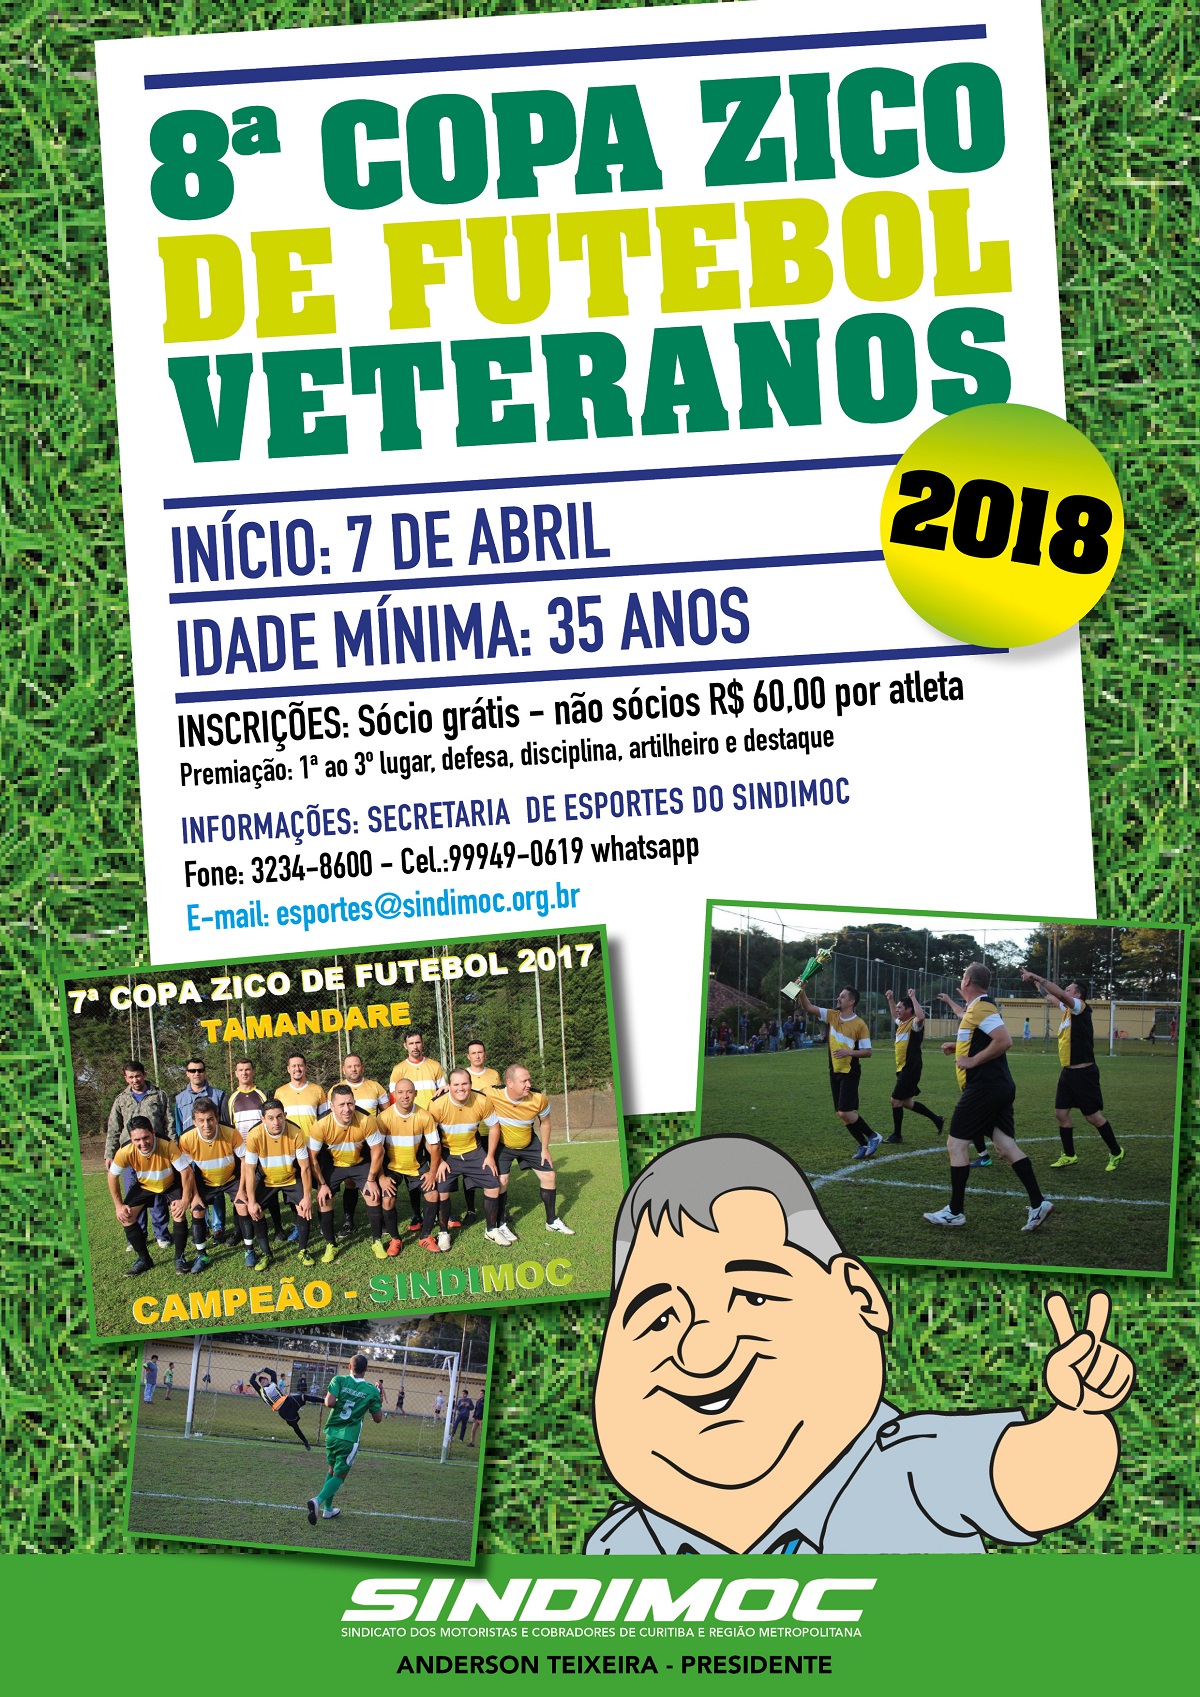 8ª Taça Zico de Futebol Veteranos vai começar!